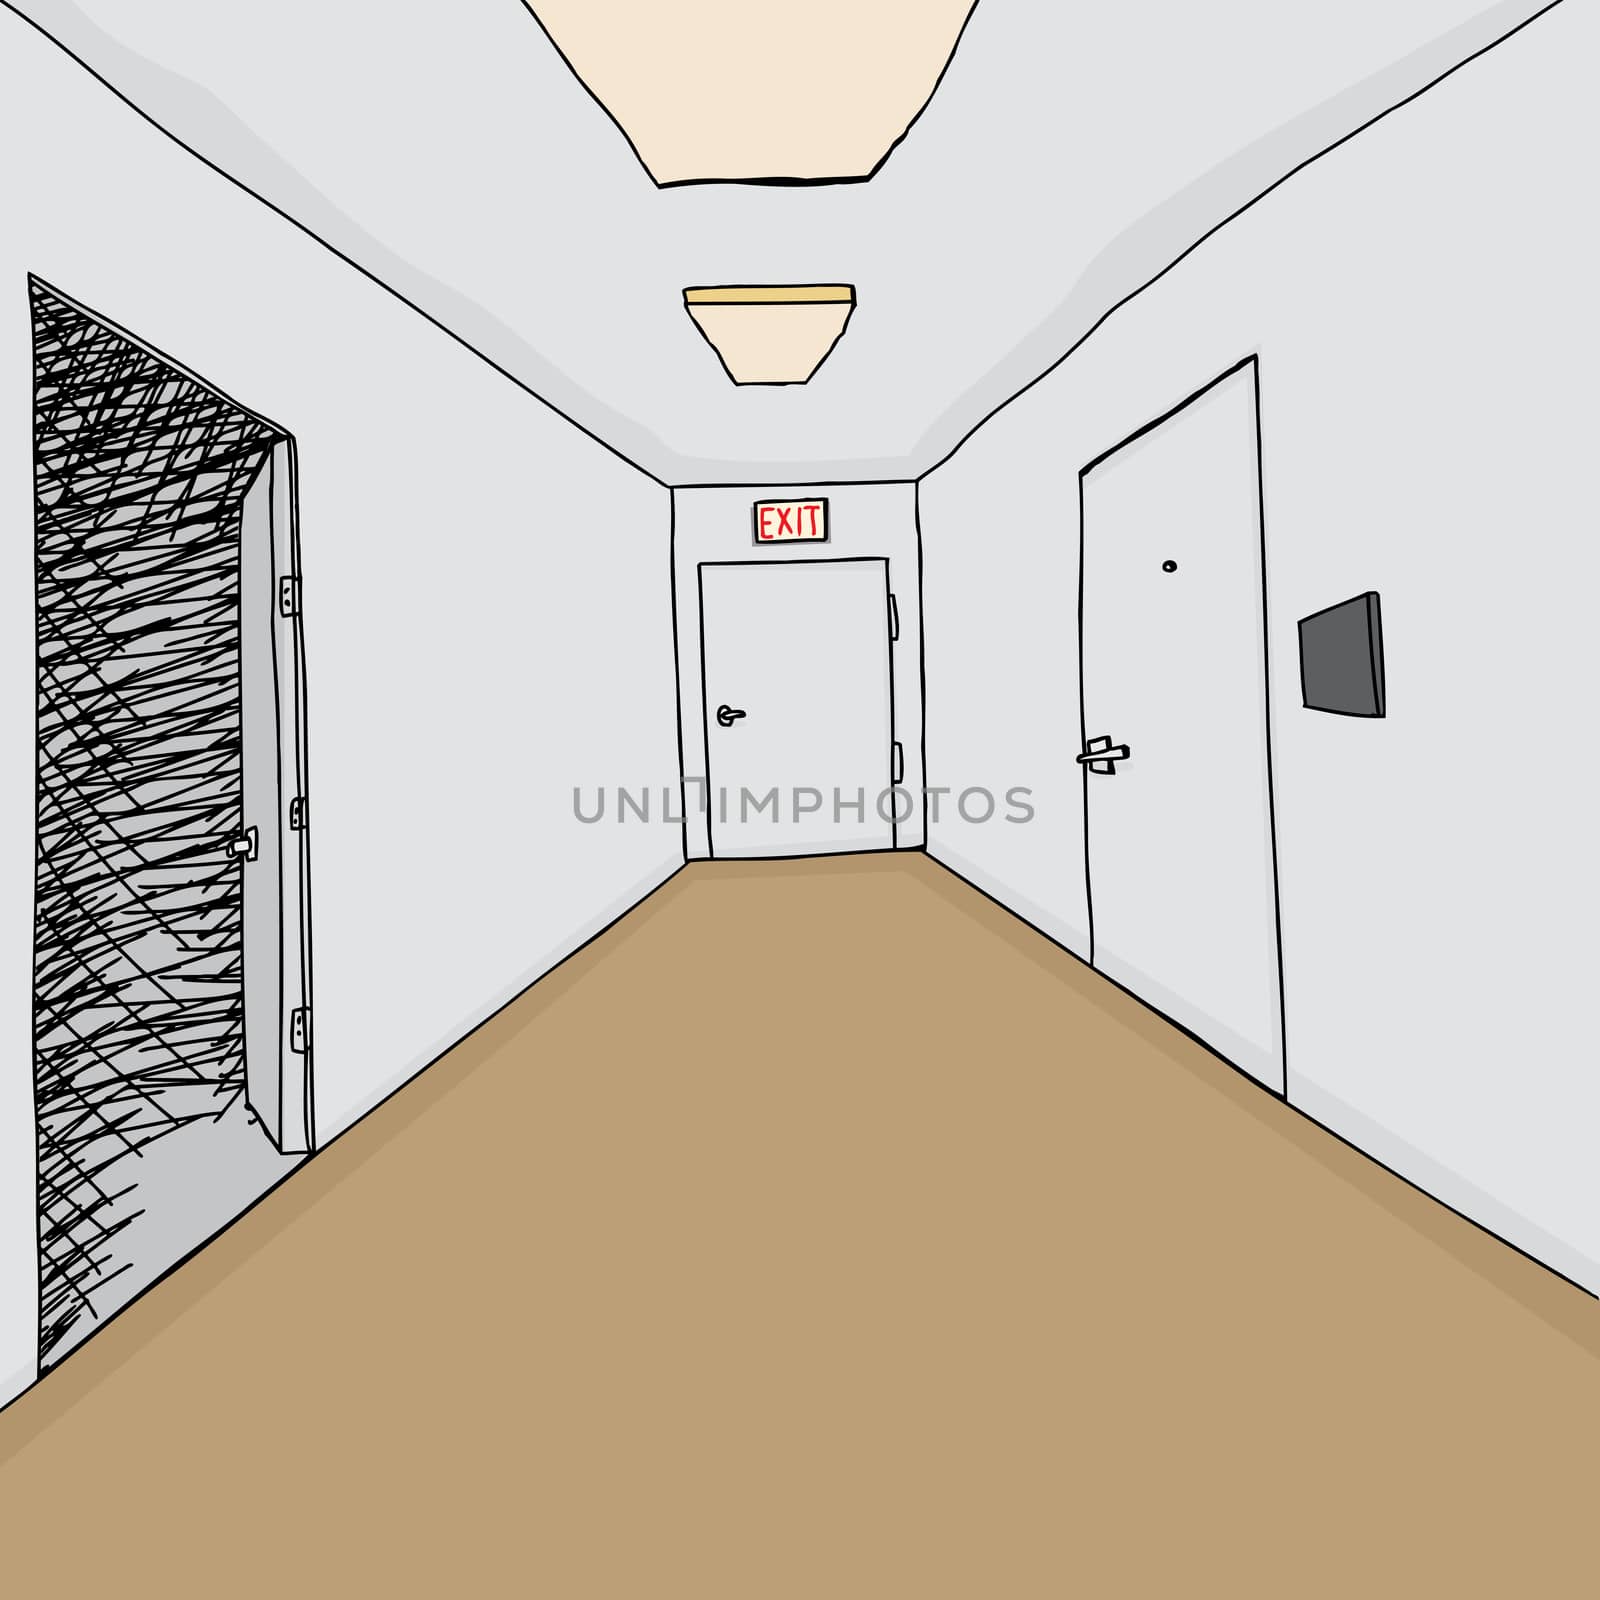 Corridor cartoon background with open door into darkness